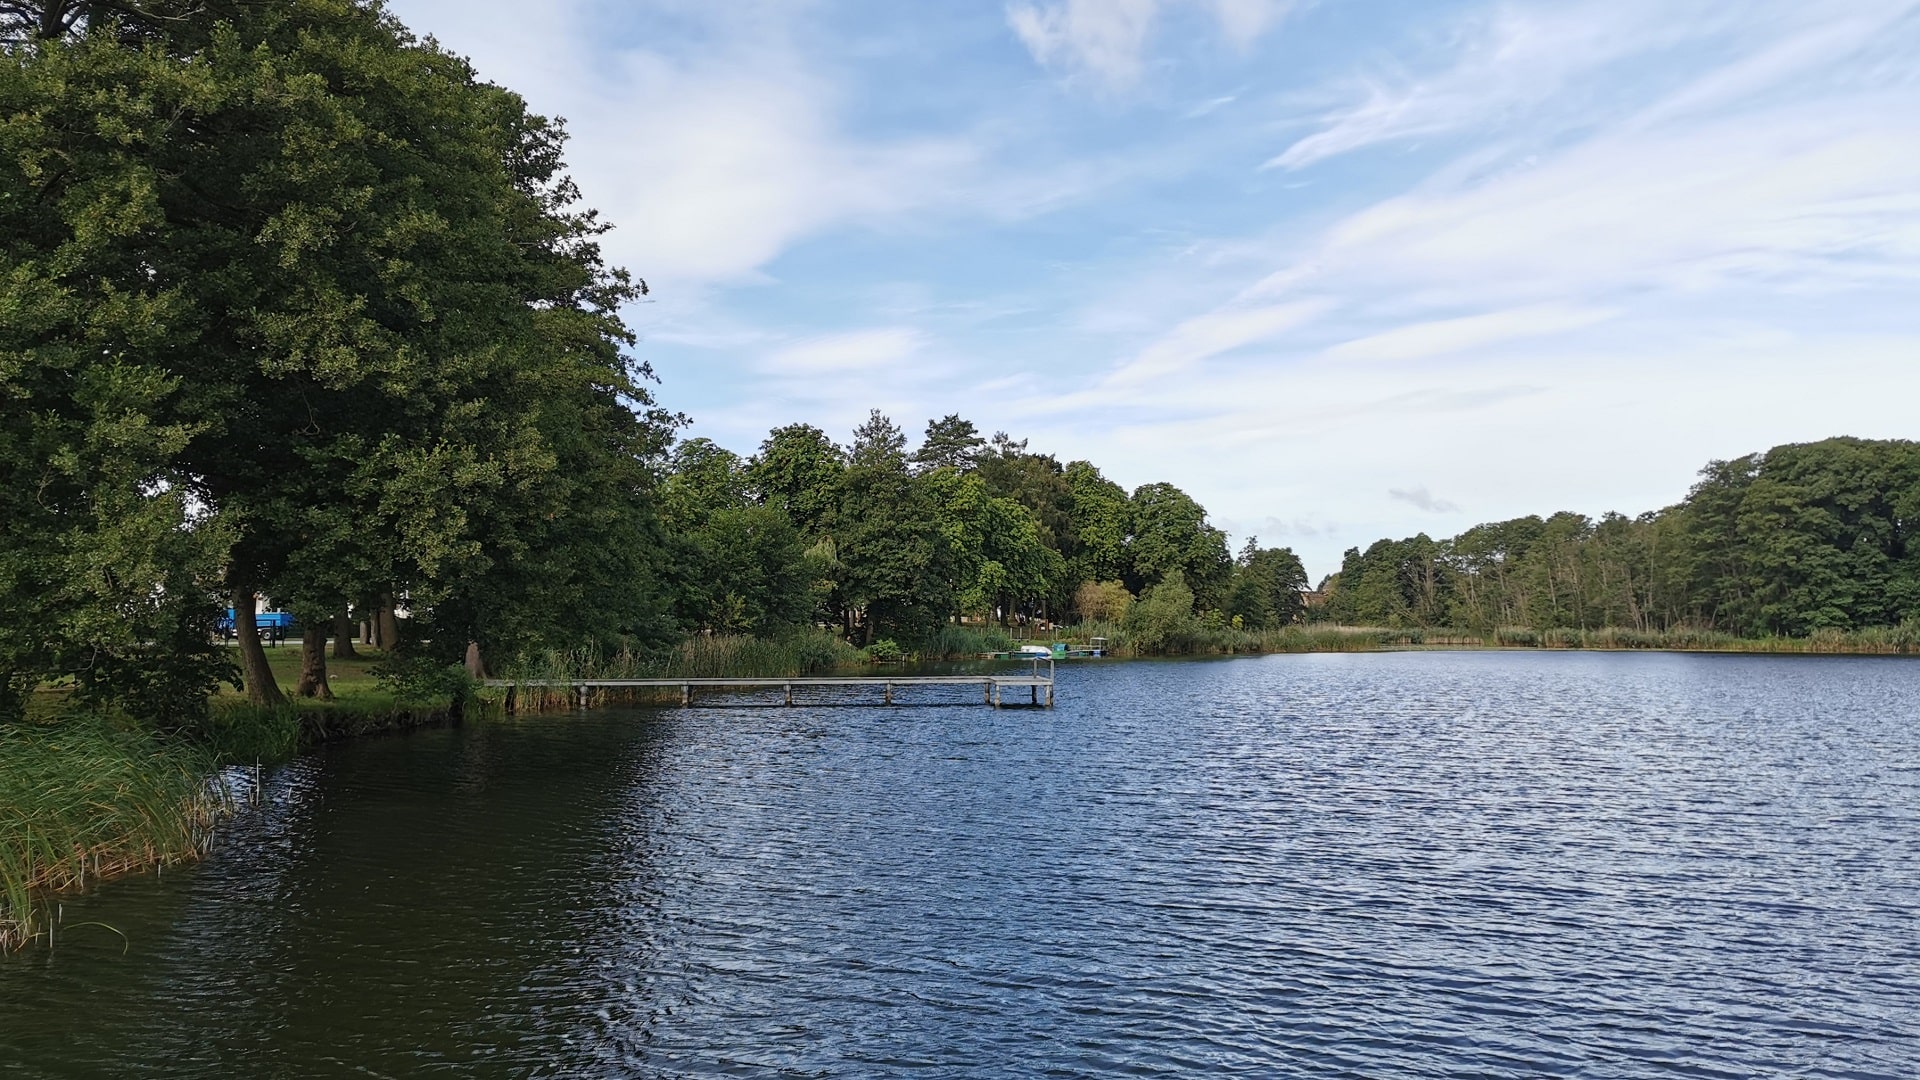 Mühlensee in Liebenwalde mit grünen Bäumen, Schilf am Ufer, Bootssteg am Südufer, blauer Himmel und Schleierwolken.